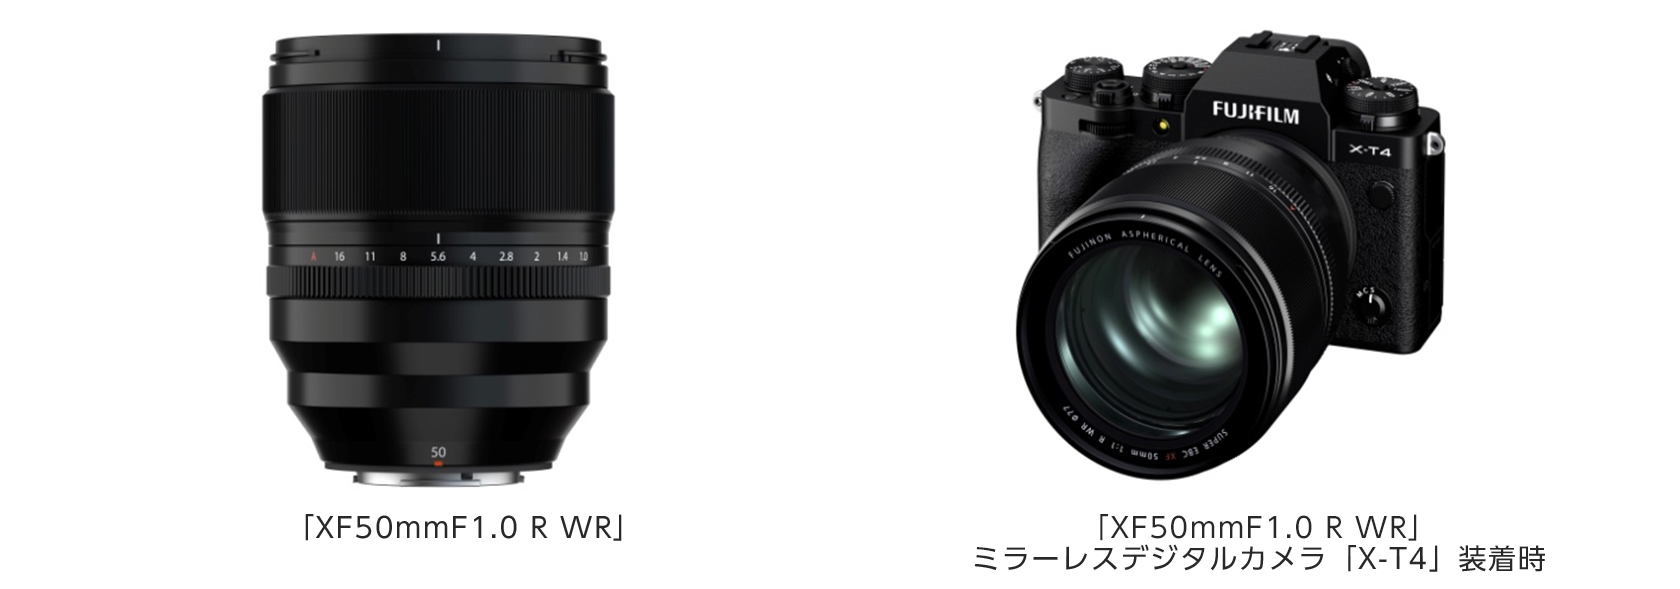 大口径中望遠単焦点レンズ「フジノンレンズ XF50mmF1.0 R WR」新発売